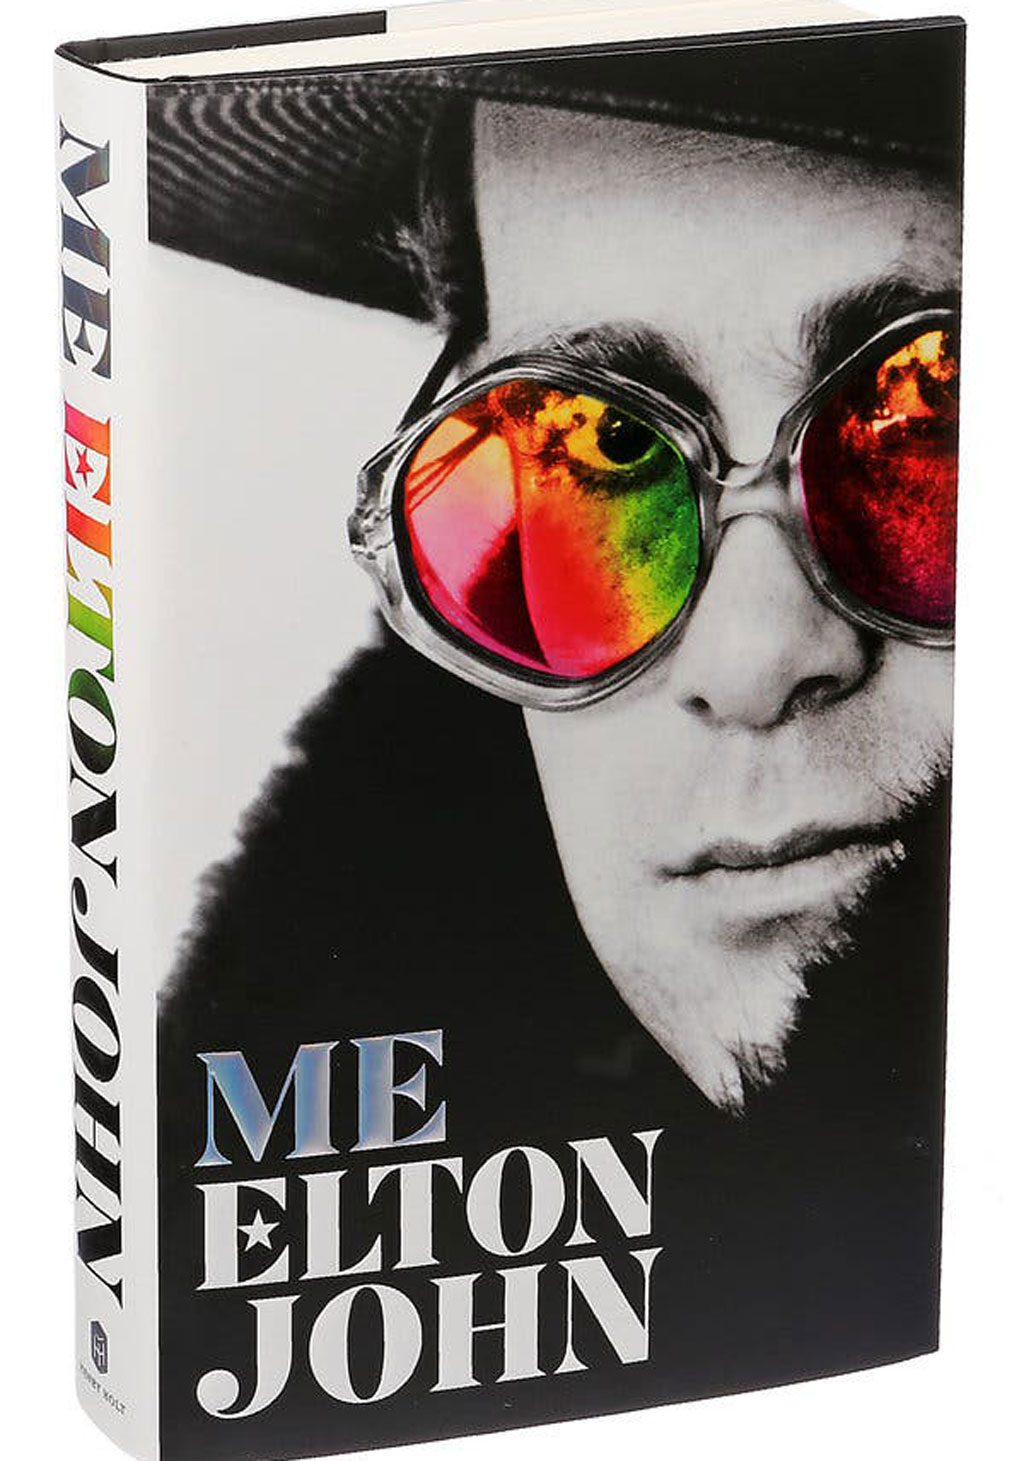 Danh ca huyền thoại Elton John 'nói xấu' Michael Jackson trong tự truyện2